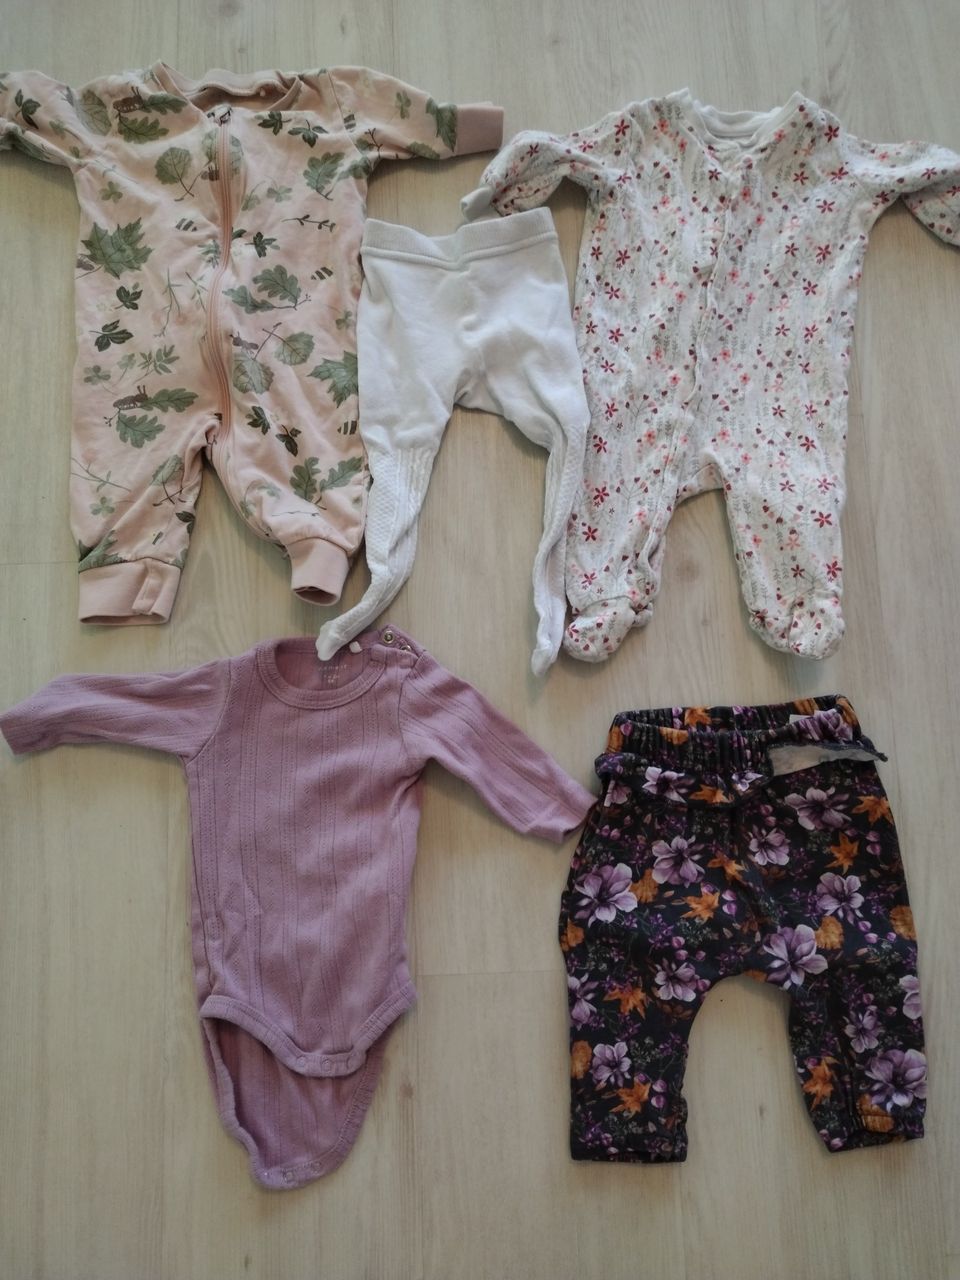 Vauvan vaatteita koko 50-56